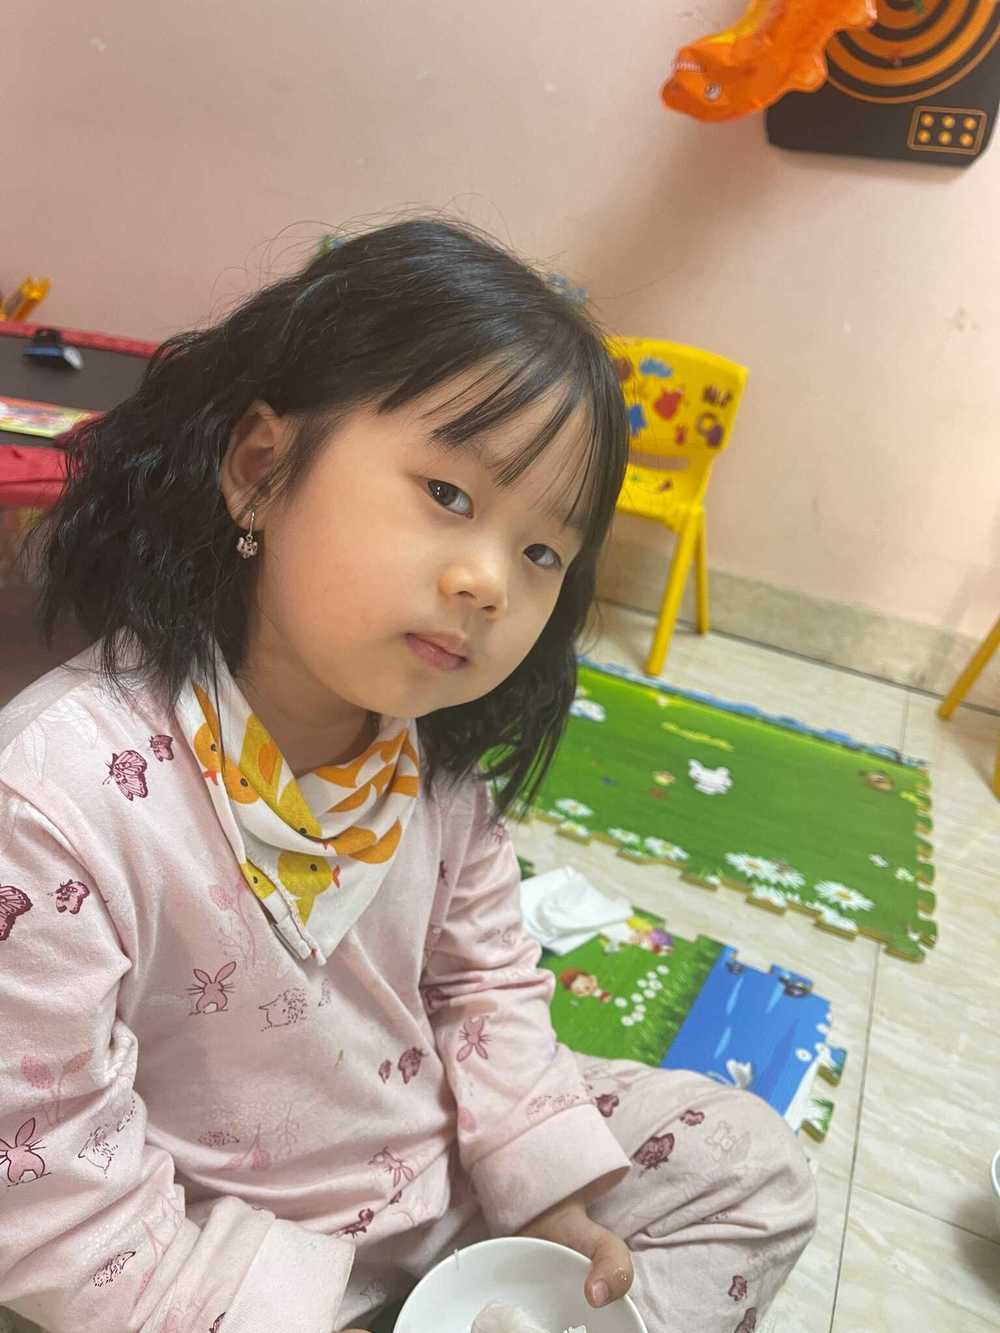  
Còn nhỏ nhưng cô bé đã nói thạo tiếng Anh và tiếng Việt. (Ảnh: FB AlexD Music Insight)